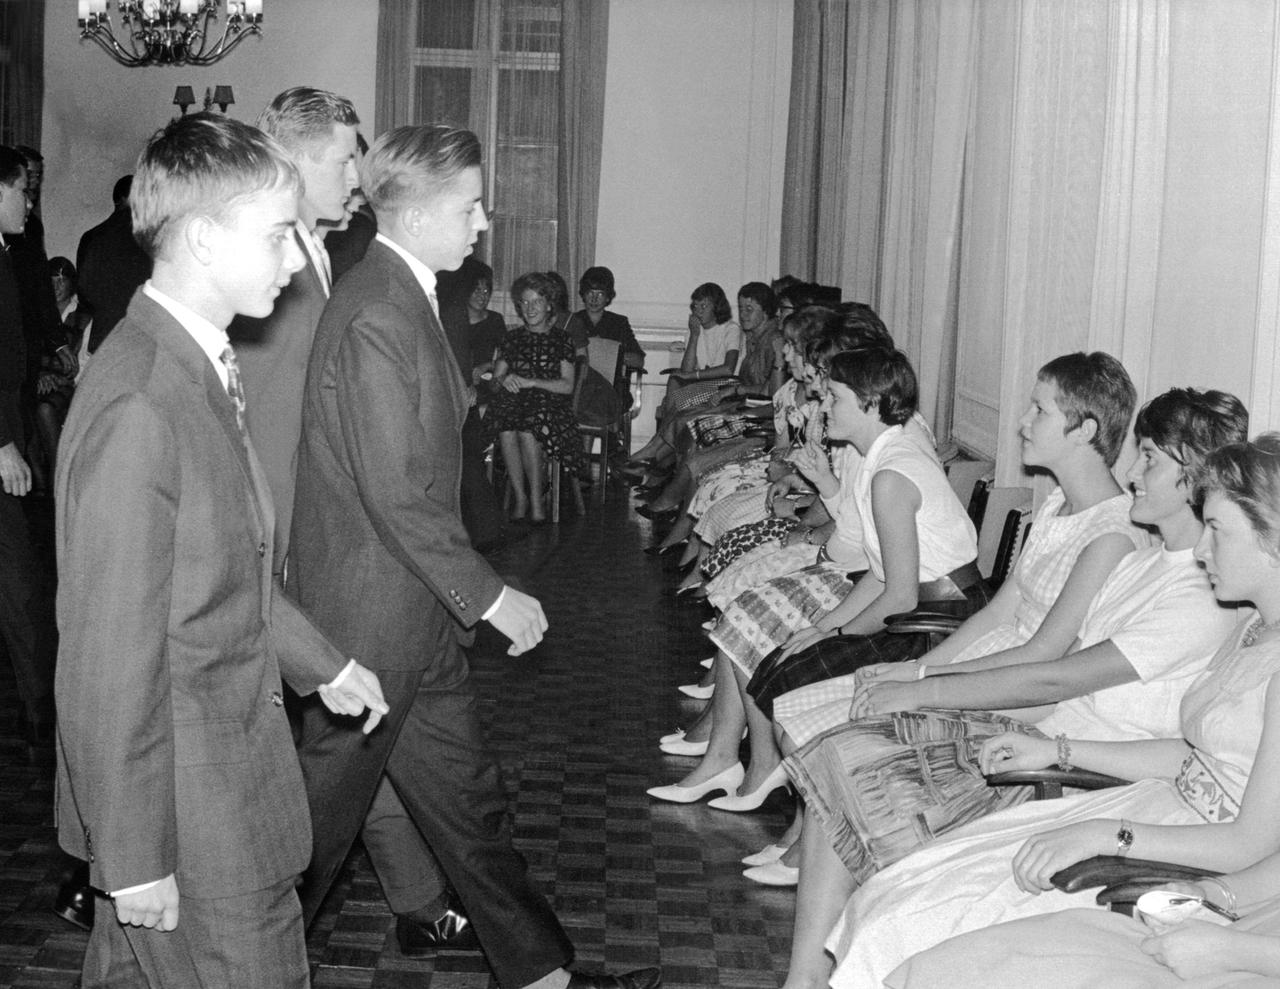 Schwarz-Weiß-Aufnahme einer Tanzstunde bei der die jungen Frauen sitzen und von den jungen Männern aufgefordert werden.